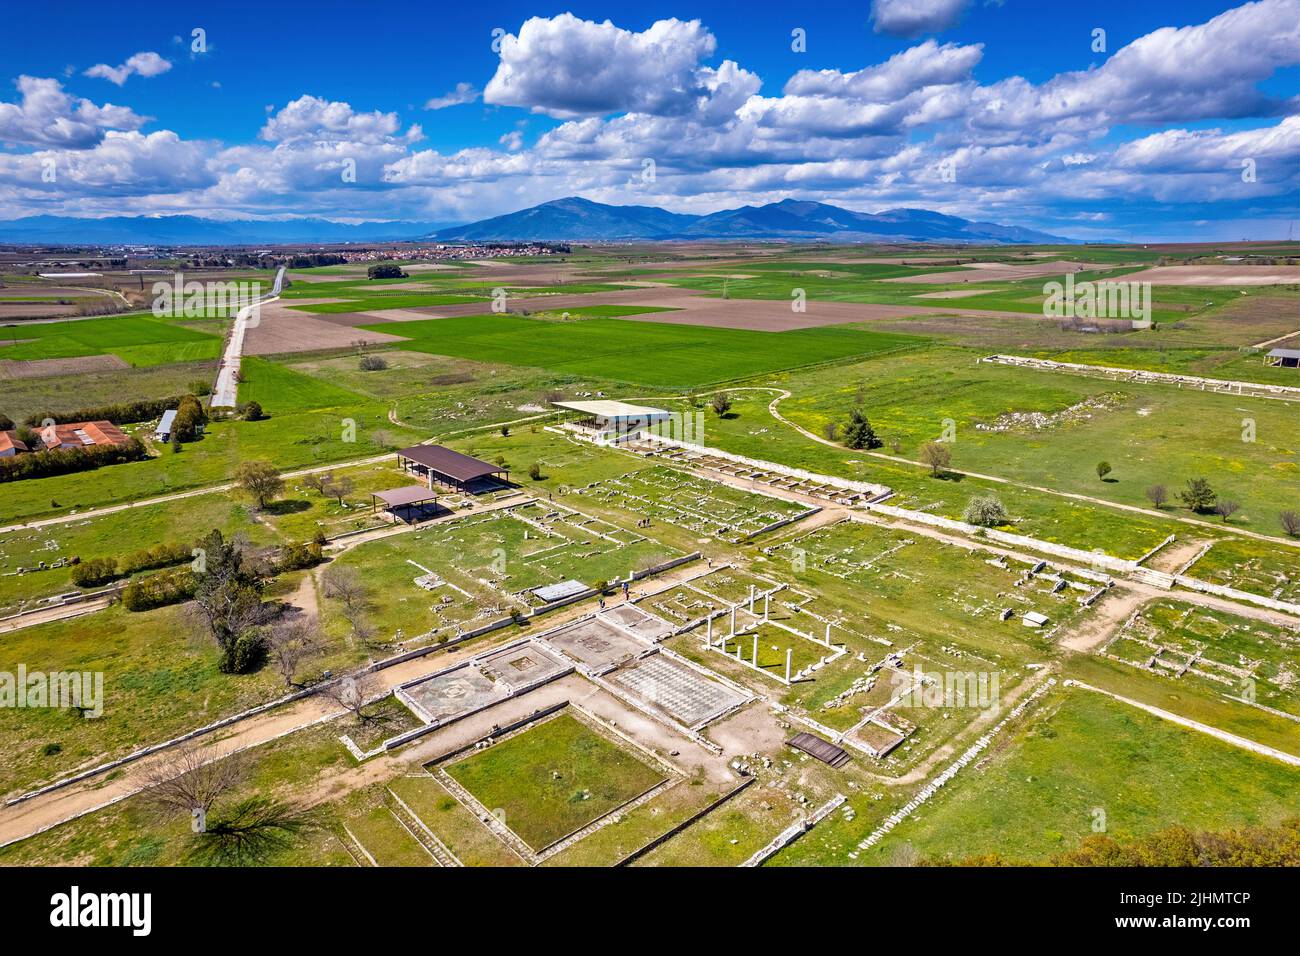 Aereo (drone), vista panoramica del sito archeologico dell'antica Pella, Macedonia Centrale, Grecia. Foto Stock